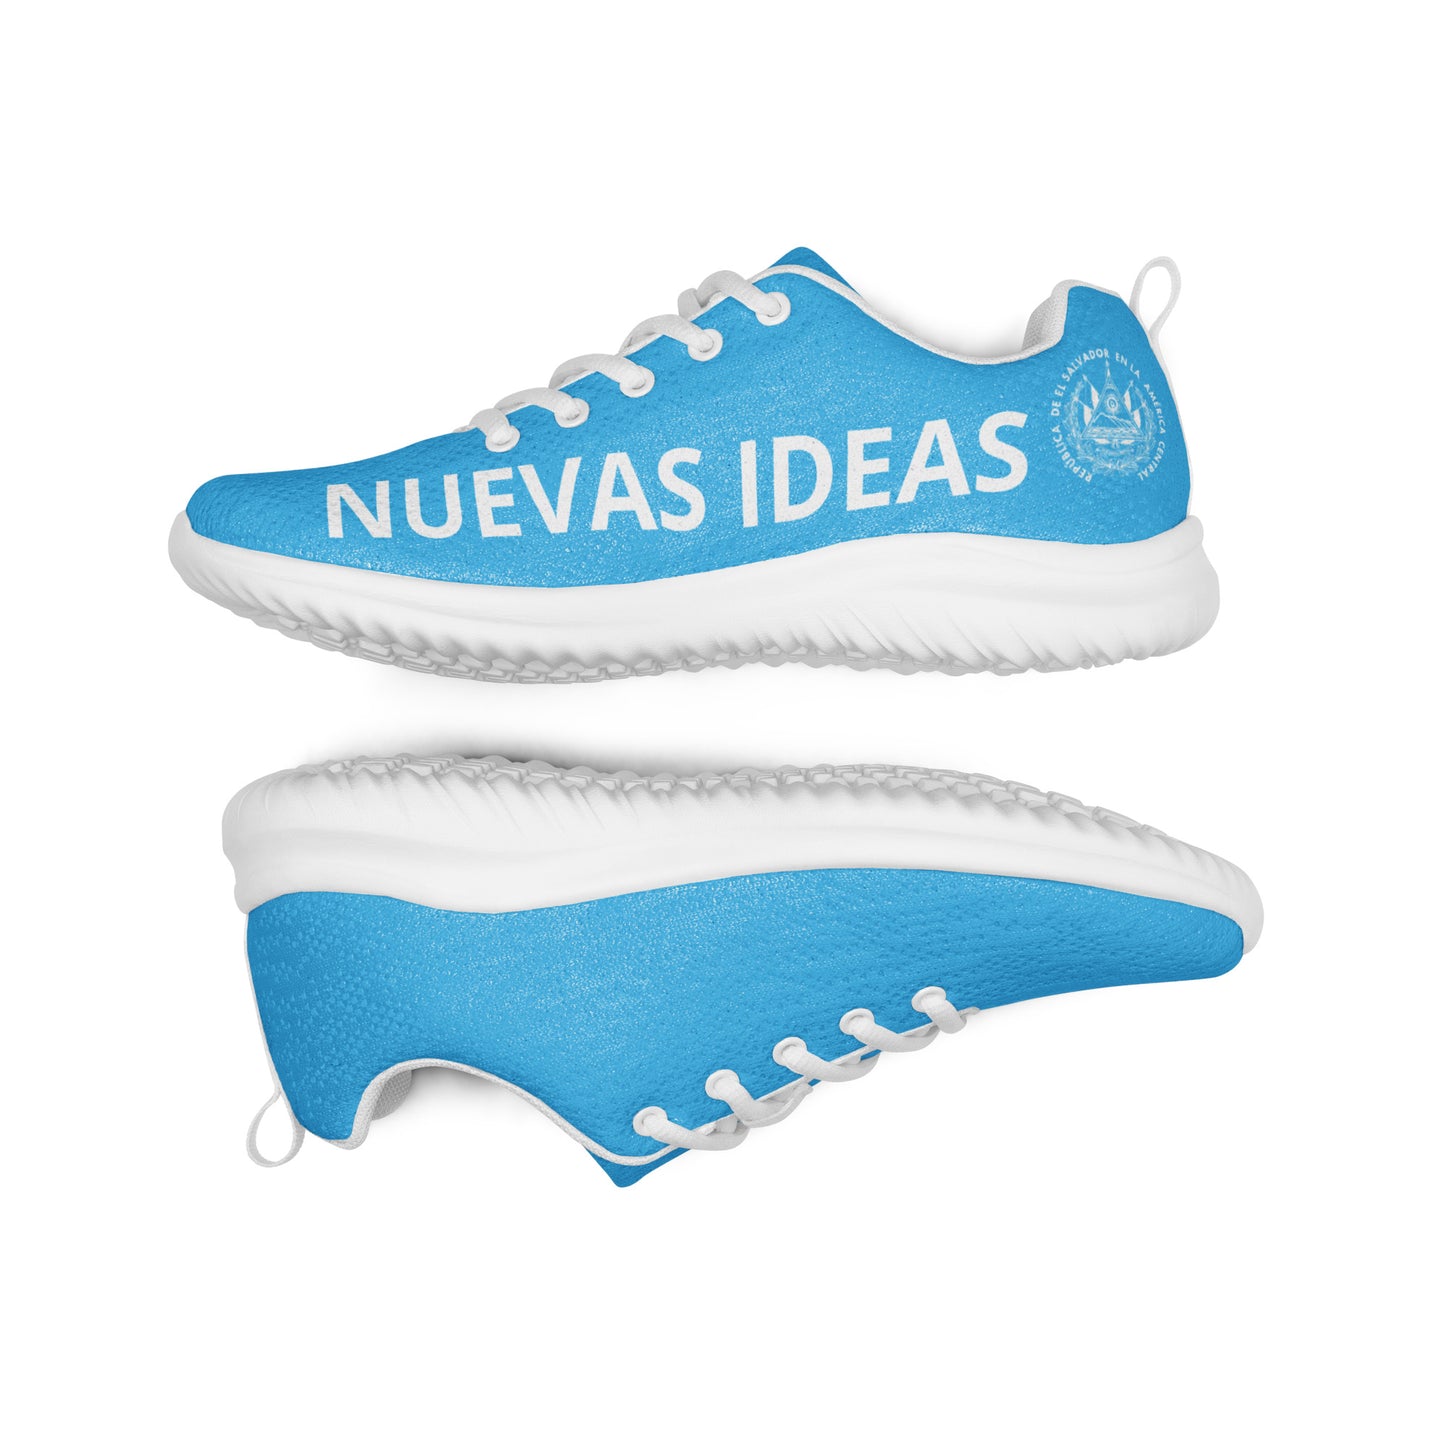 Nuevas Ideas Hombre - Men’s athletic shoes